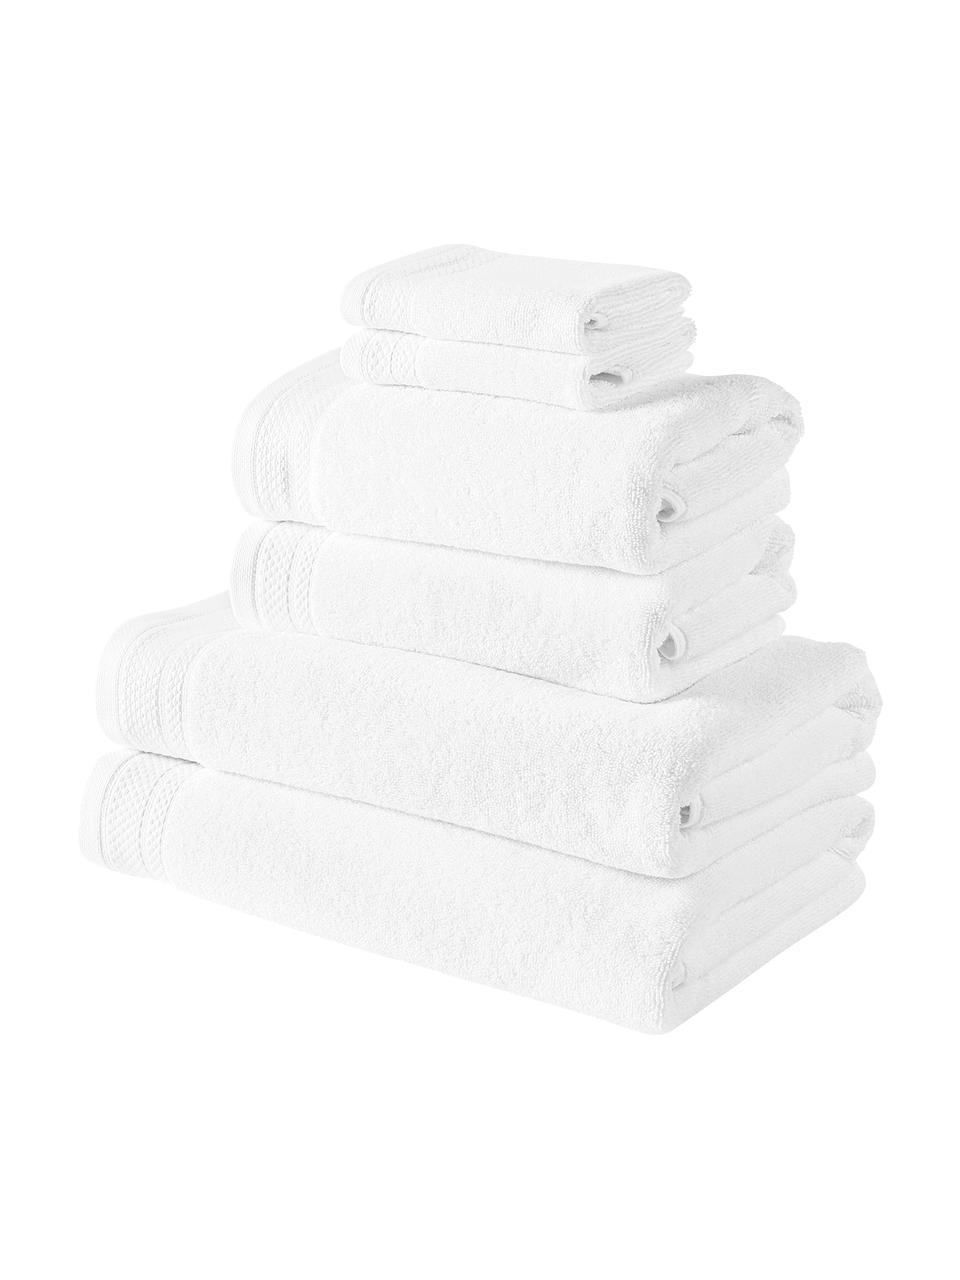 Lot de serviettes de bain en coton bio Premium, 6 élém., 100 % coton bio, certifié GOTS
Qualité supérieure 600 g/m²

Le matériau est certifié STANDARD 100 OEKO-TEX®, IS025 189577, OETI, Blanc, Lot de différentes tailles